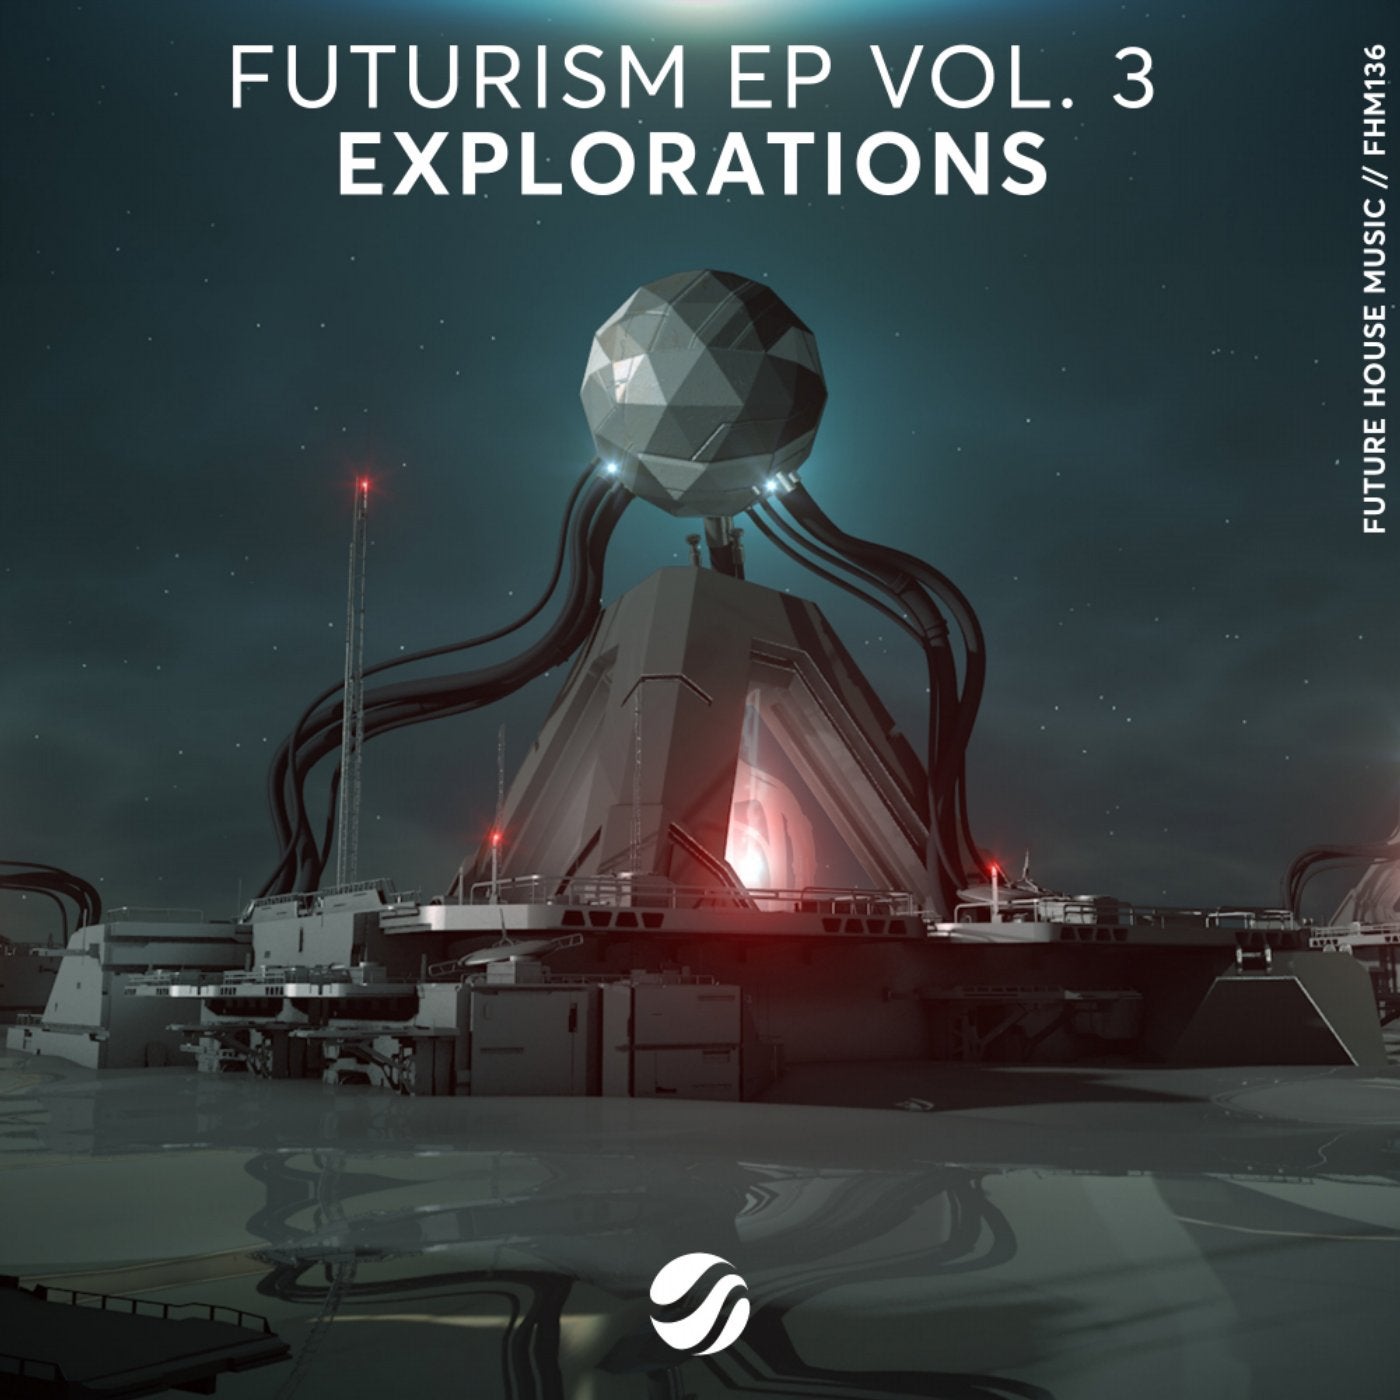 Futurism EP Vol. 3: Explorations